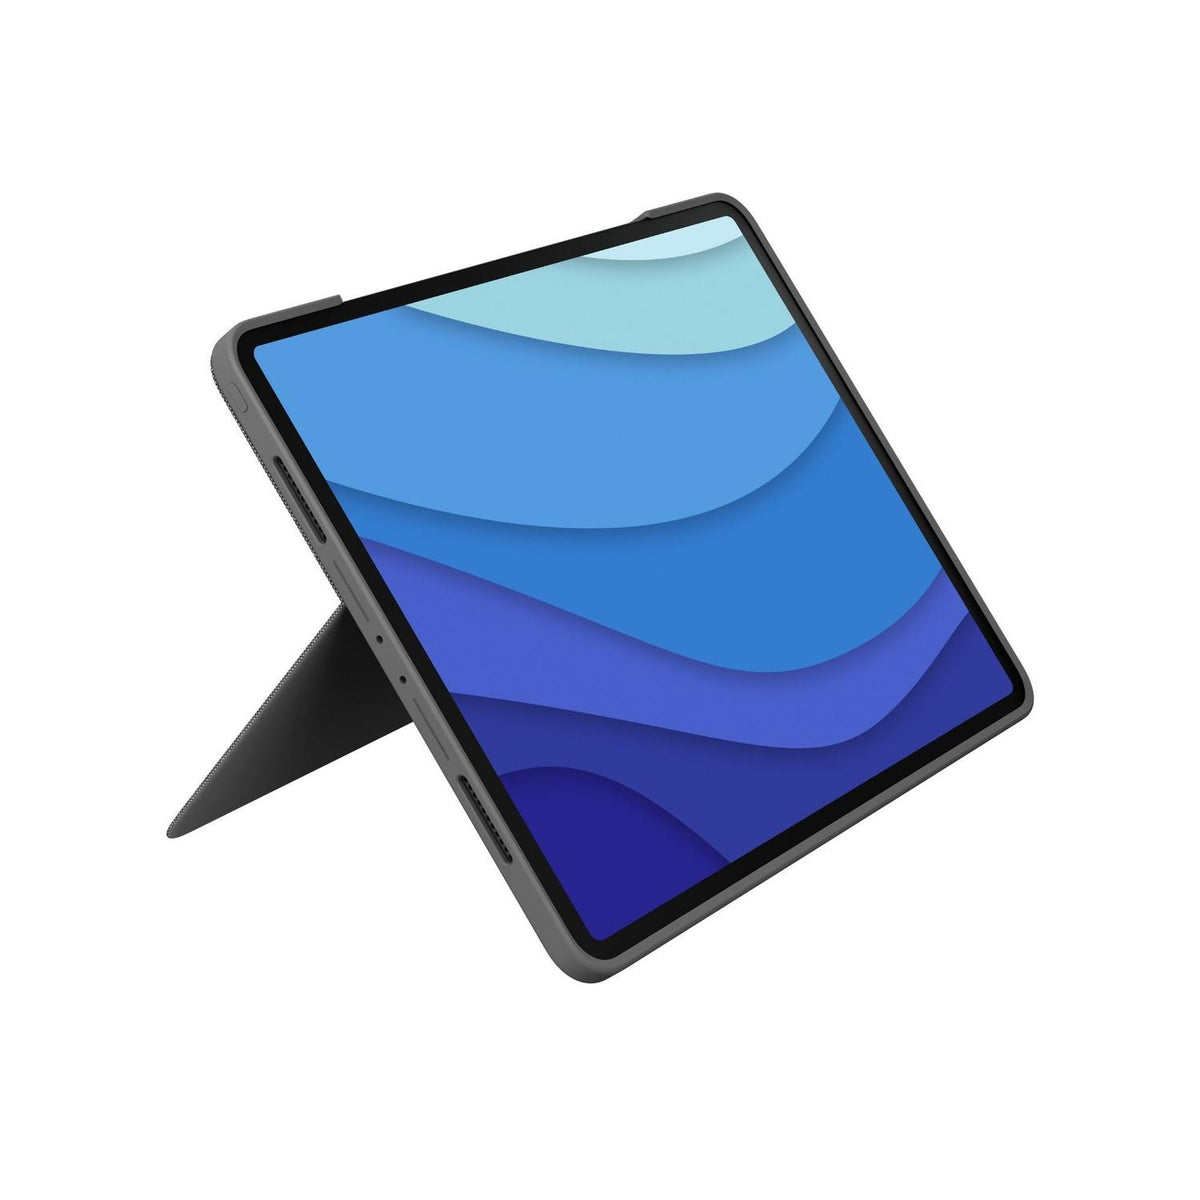 Logitech Folio Con Teclado Funda Folio Combo Touch con Teclado Trackpad compatible con iPad Pro 12.9&quot; - vertikal